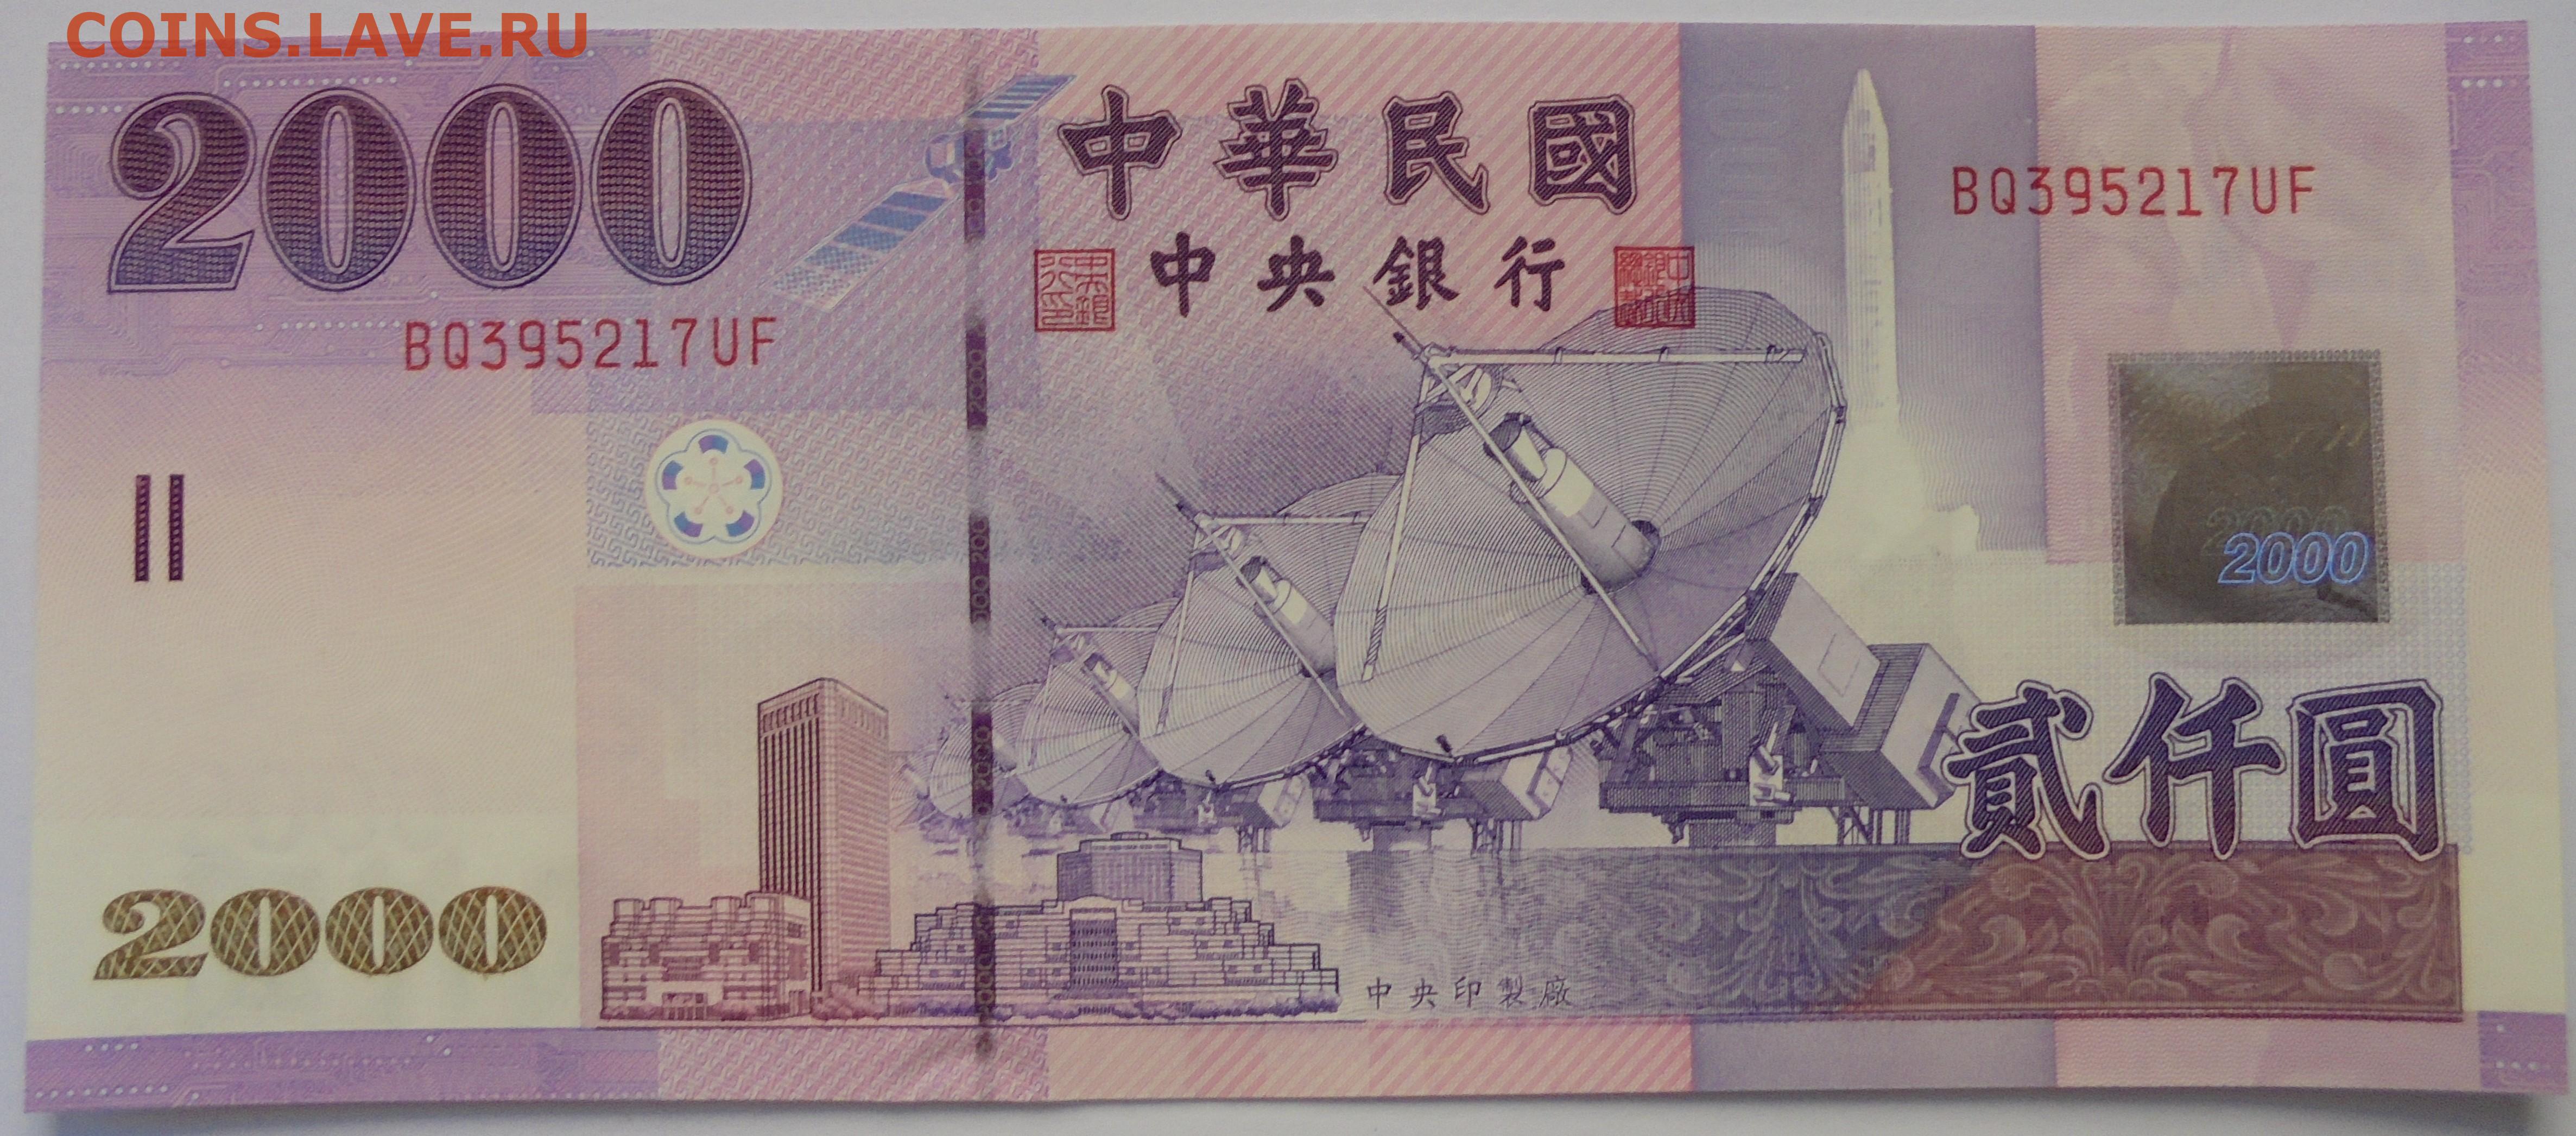 200 000 юаней. Банкноты юани 2000. Тайвань 2000 юань. Банкнота 100 юаней Тайвань. Китайские деньги 2000 юань.